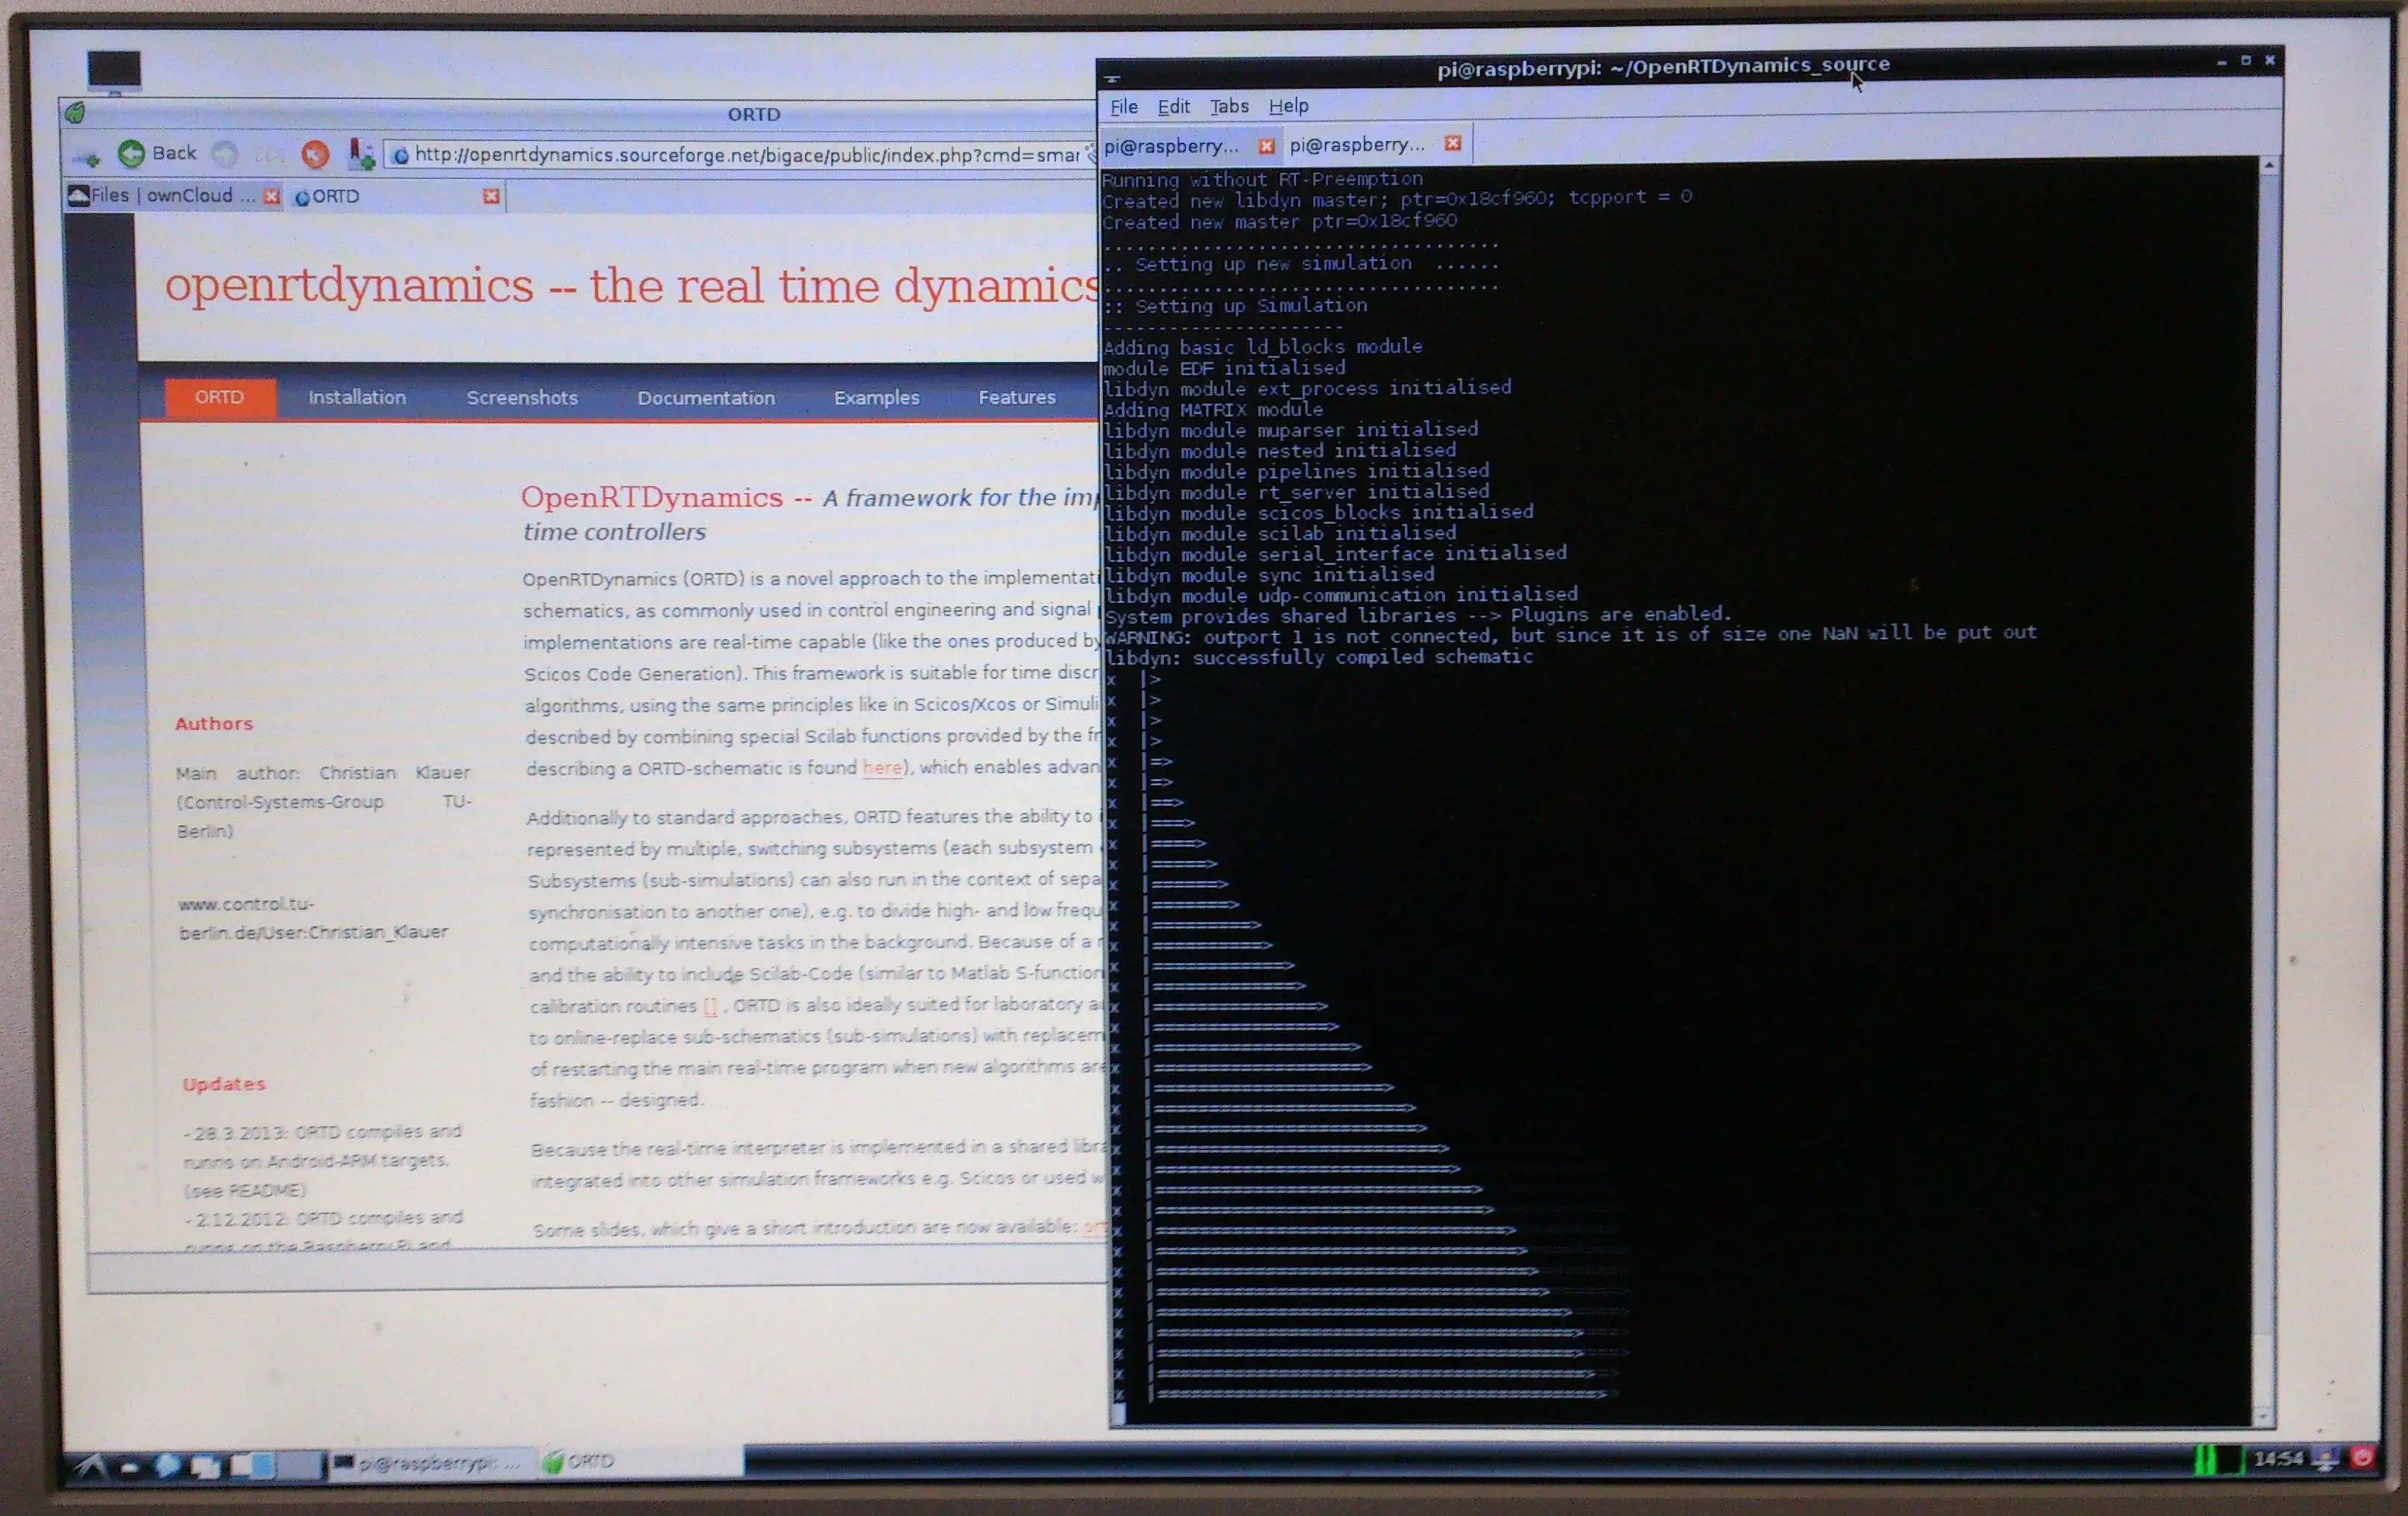 Laden Sie das Web-Tool oder die Web-App OpenRTDynamics herunter, um es online unter Linux auszuführen